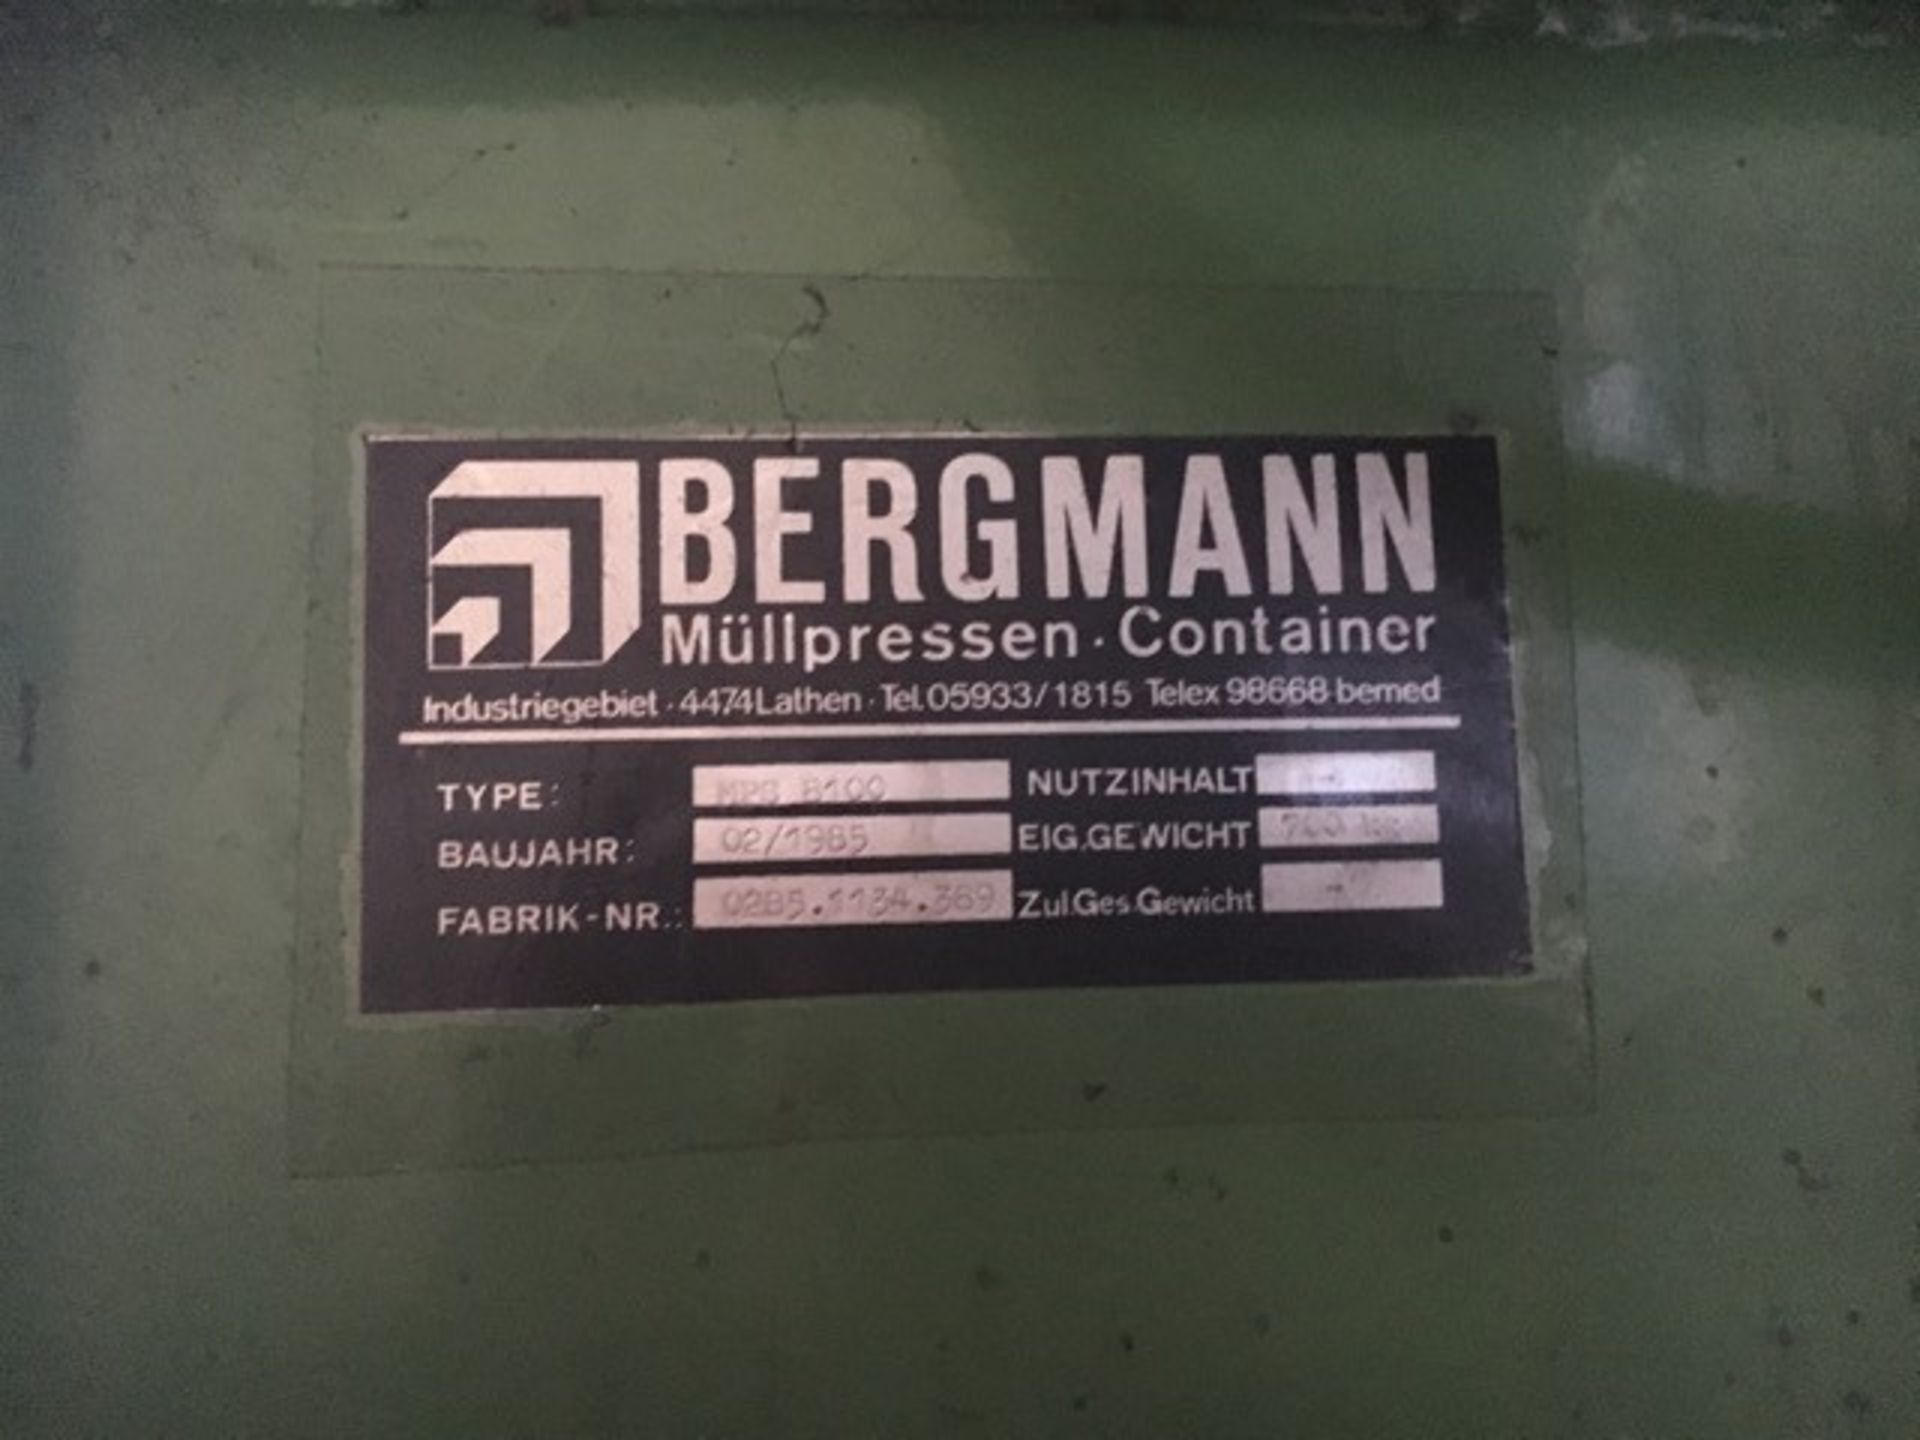 Bergman Cardboard Compactor - Image 4 of 4